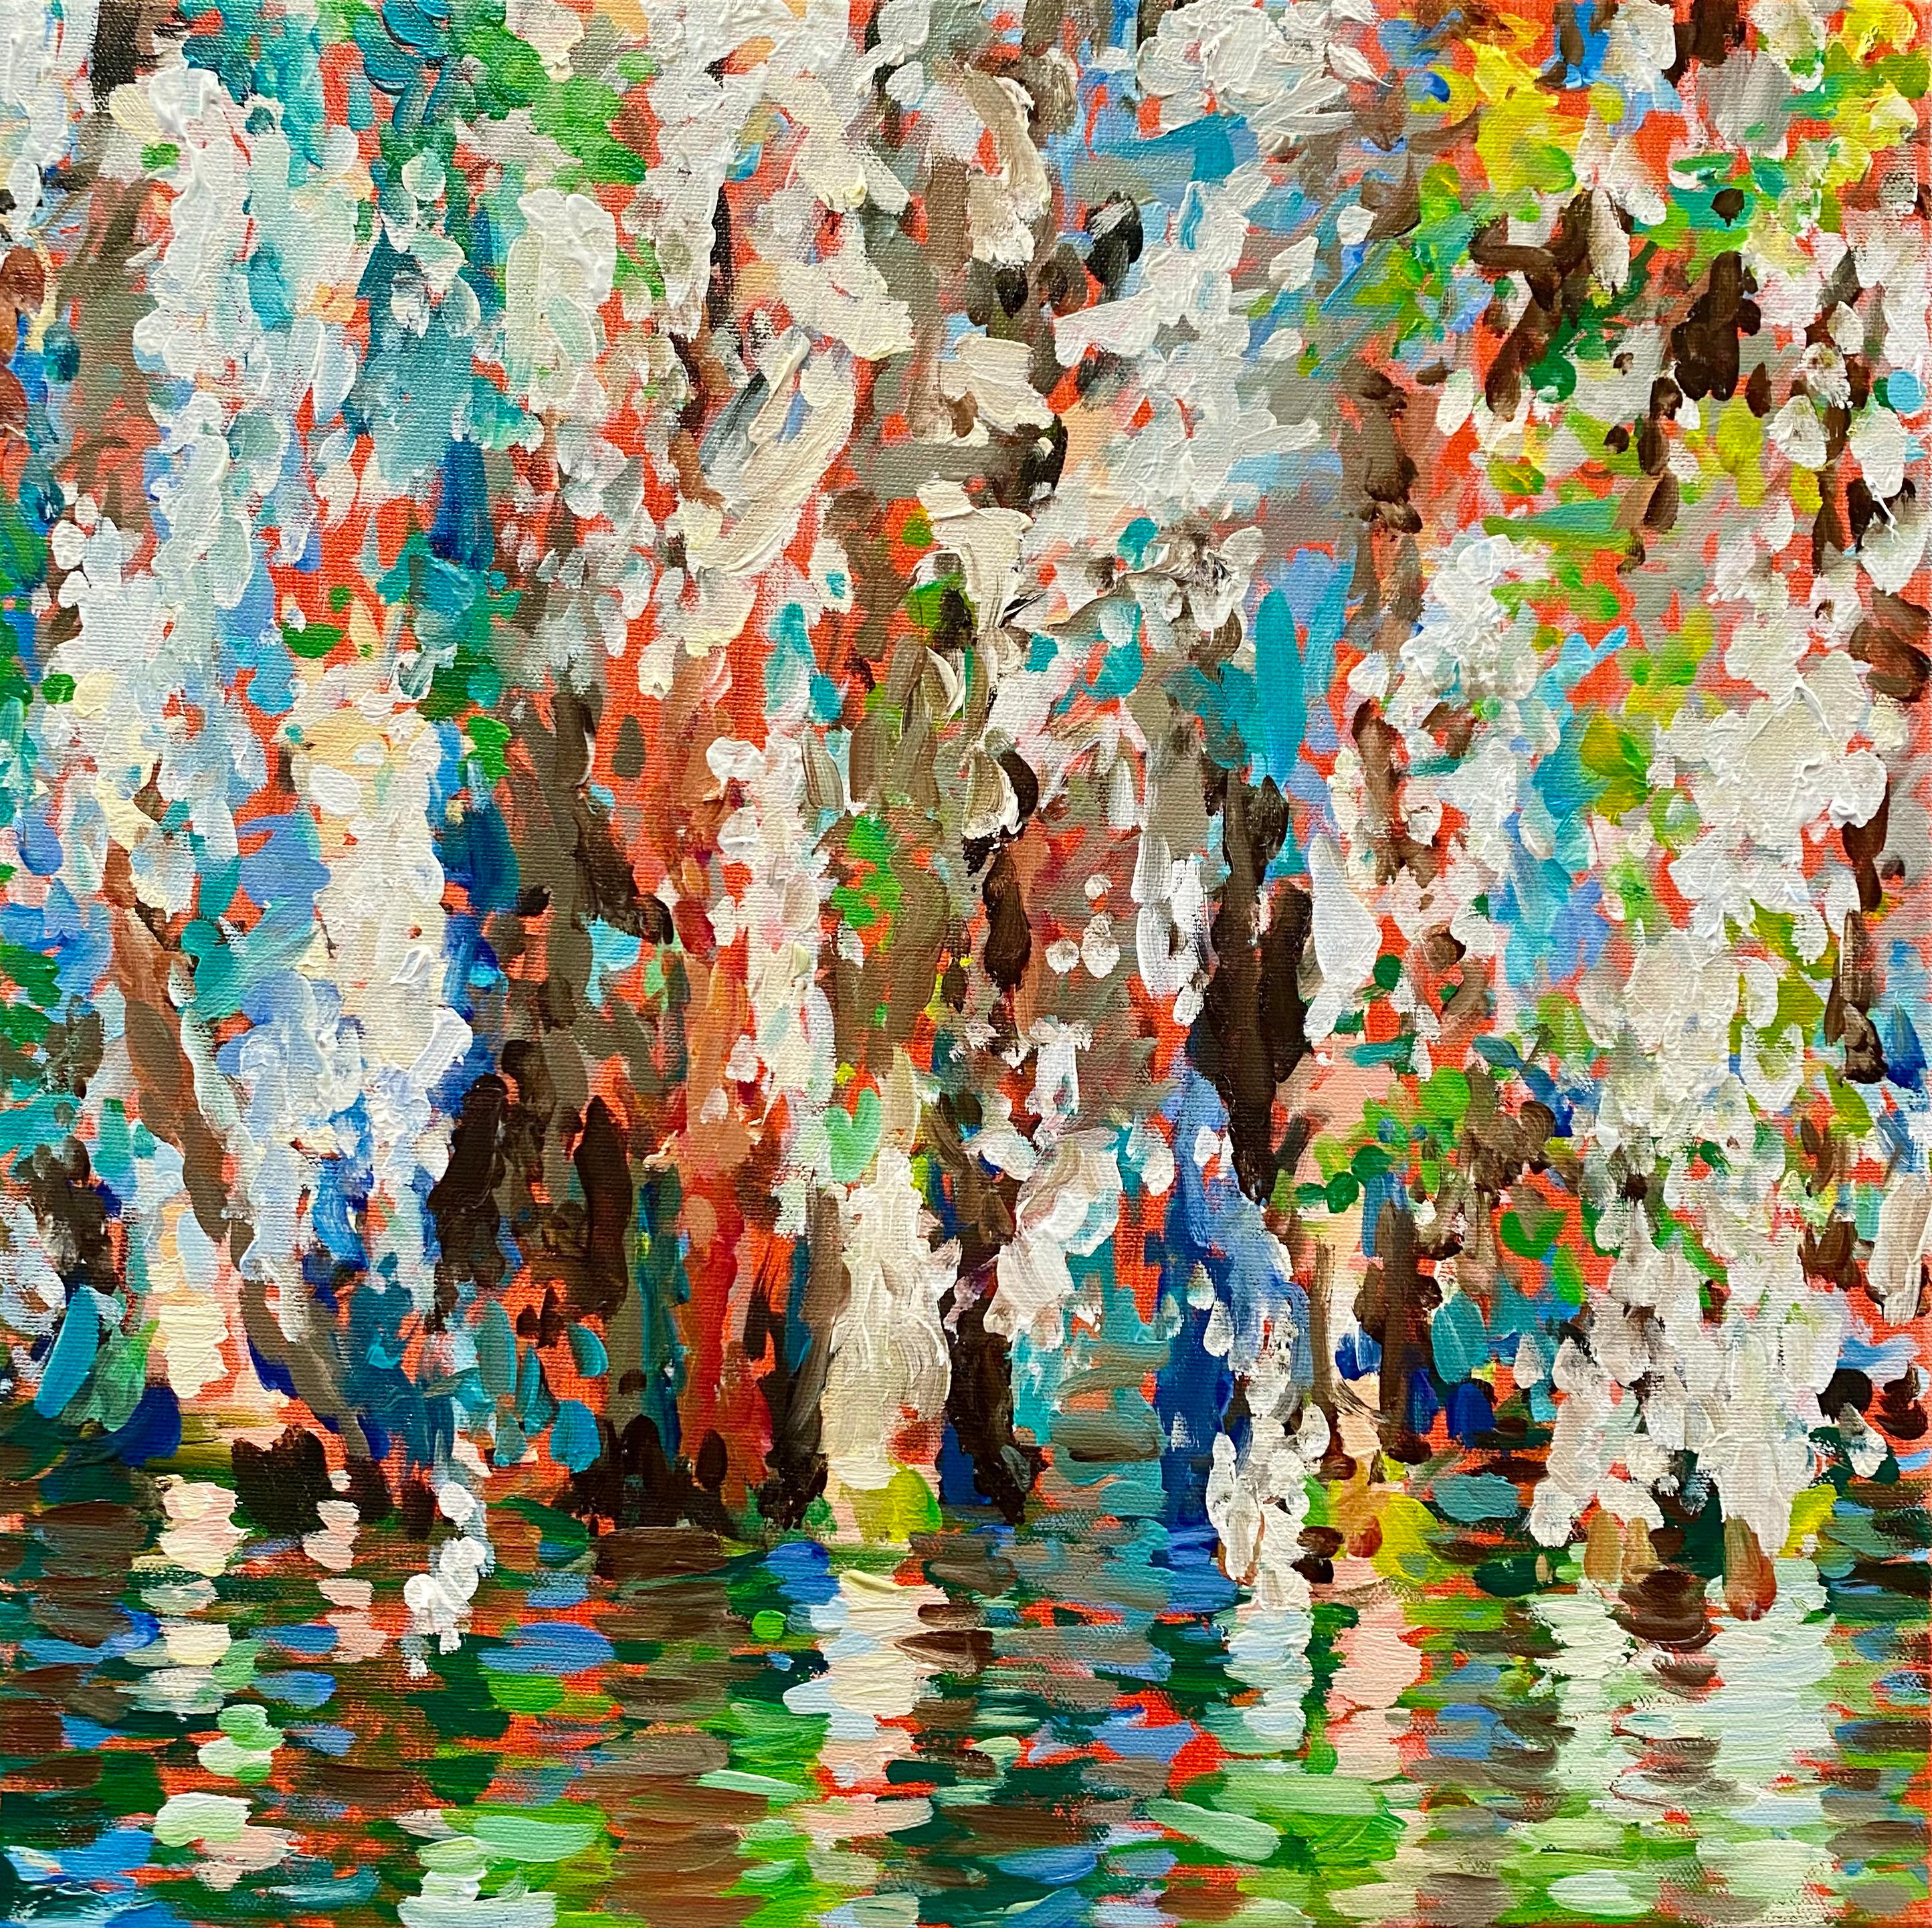 Landscape Painting Jill Hackney - "Série Le marais, sans titre", peinture impressionniste à l'huile sur toile